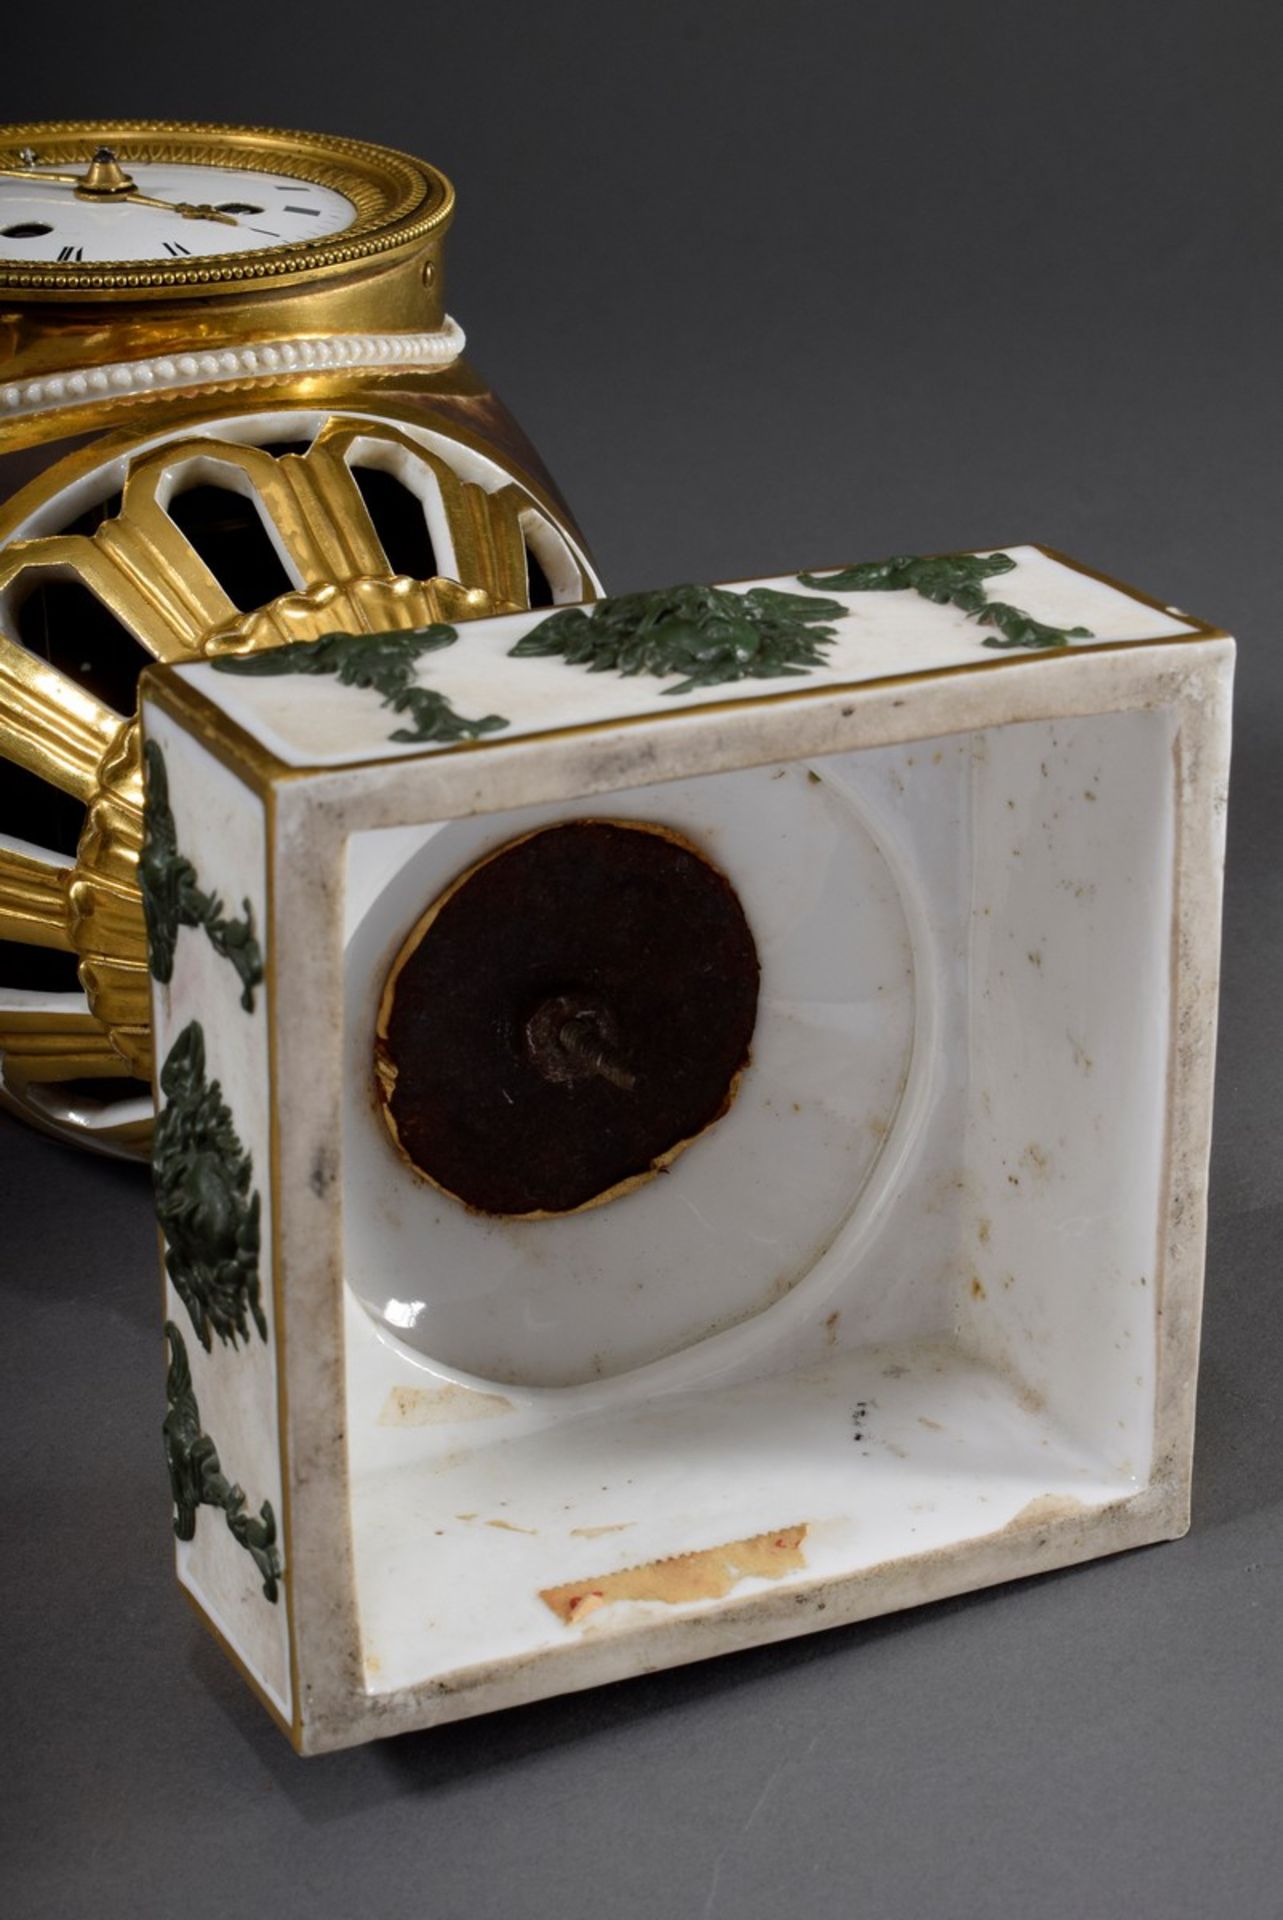 Empire Porzellan Vasenuhr mit figürlichen Handhaben "Geflügeltes Einhorn", reicher, radierter Goldm - Bild 8 aus 10